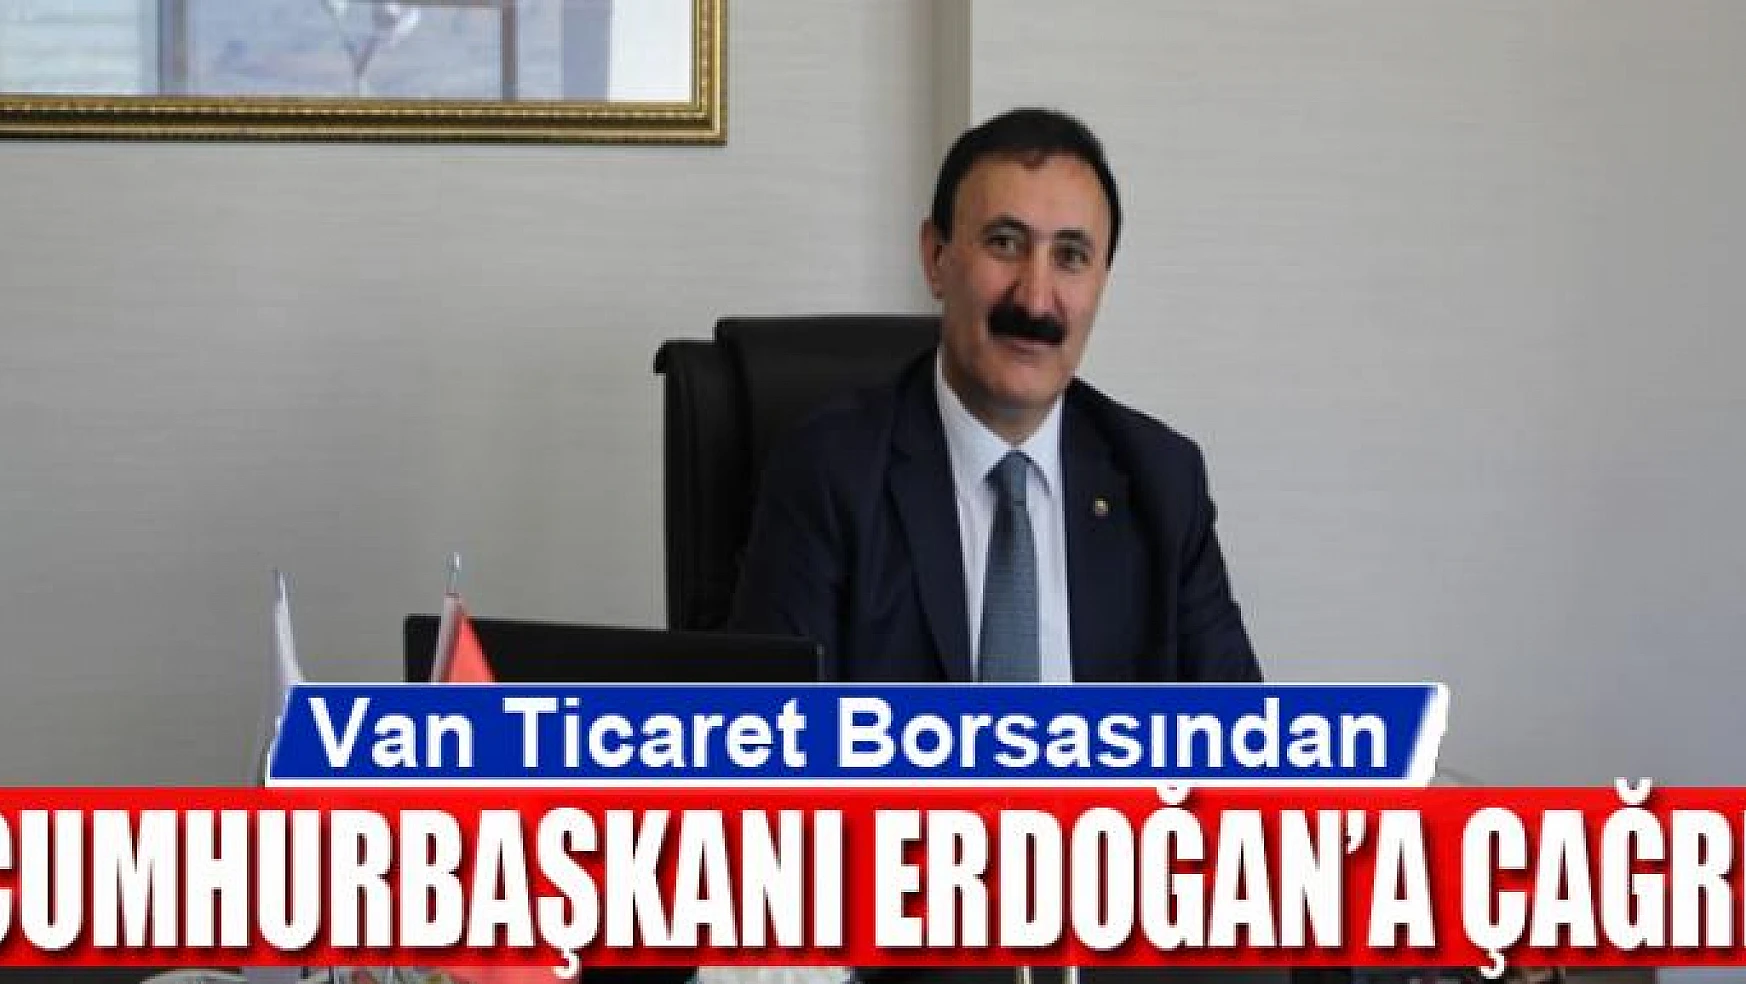 Van Ticaret Borsasından Erdoğan'a çağrı